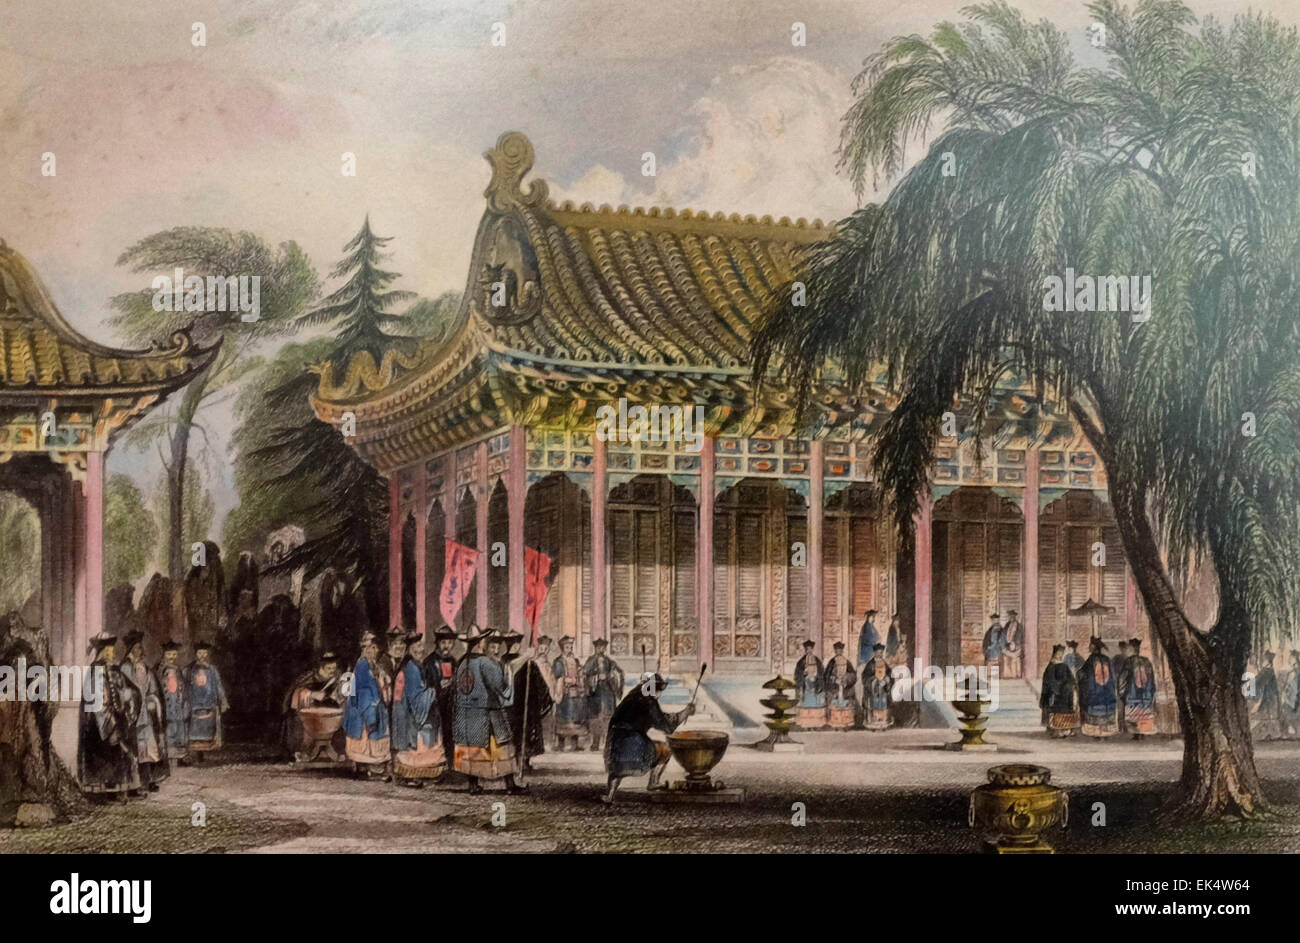 Hall de l'auditoire - le Palais d'été (Yuan Ming Yuan) -19e siècle Chine Banque D'Images